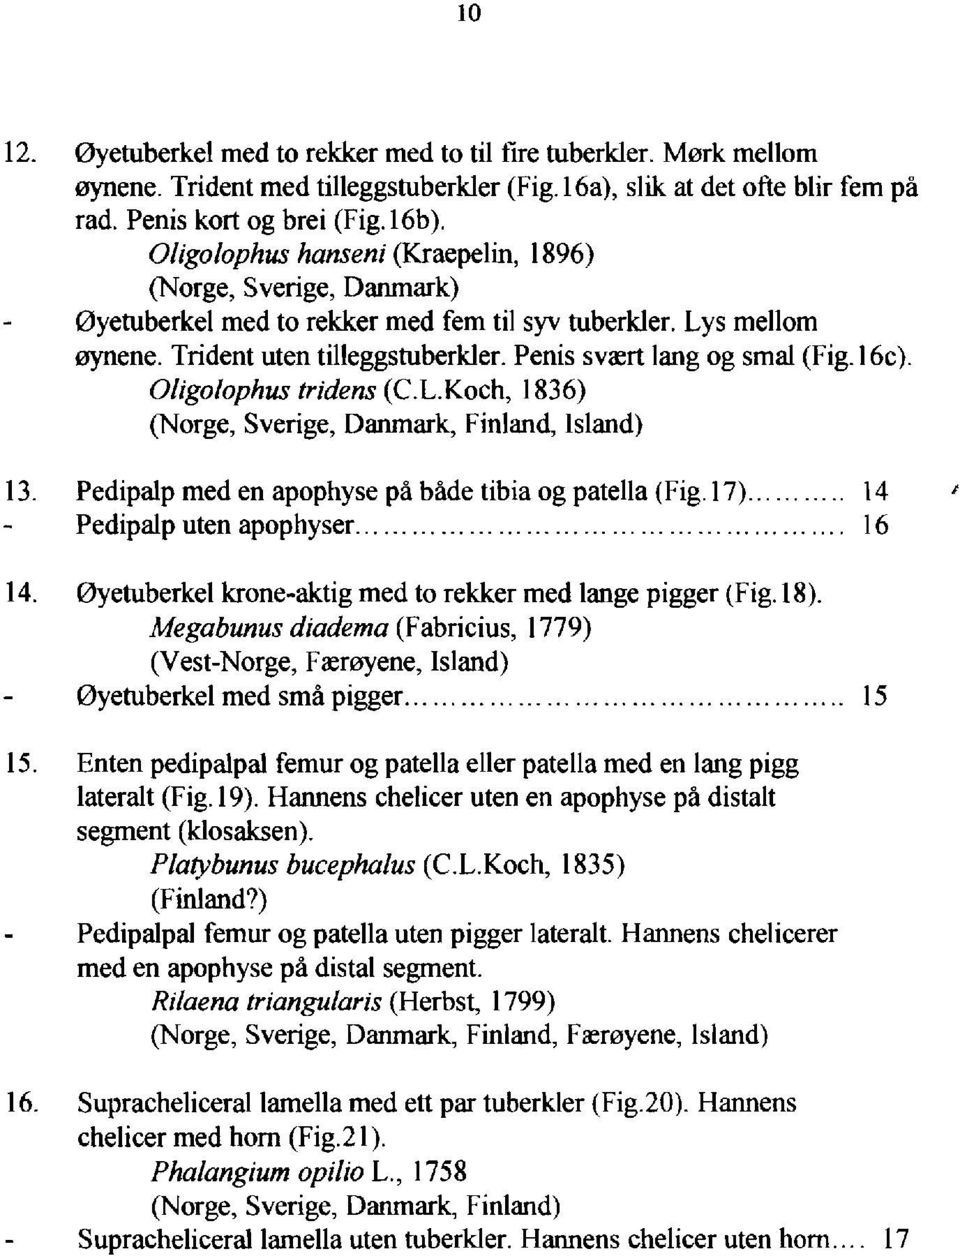 16c). Oligolophus tridens (C.L.Koch, 1836) (Norge, Sverige, Danrnark, Finland, lsland) 13. Pedipalp med en apophyse pã bãde tibia og patel1a (Fig. 17).., 14 Pedipalp uten apophyser............................................. 16 14.